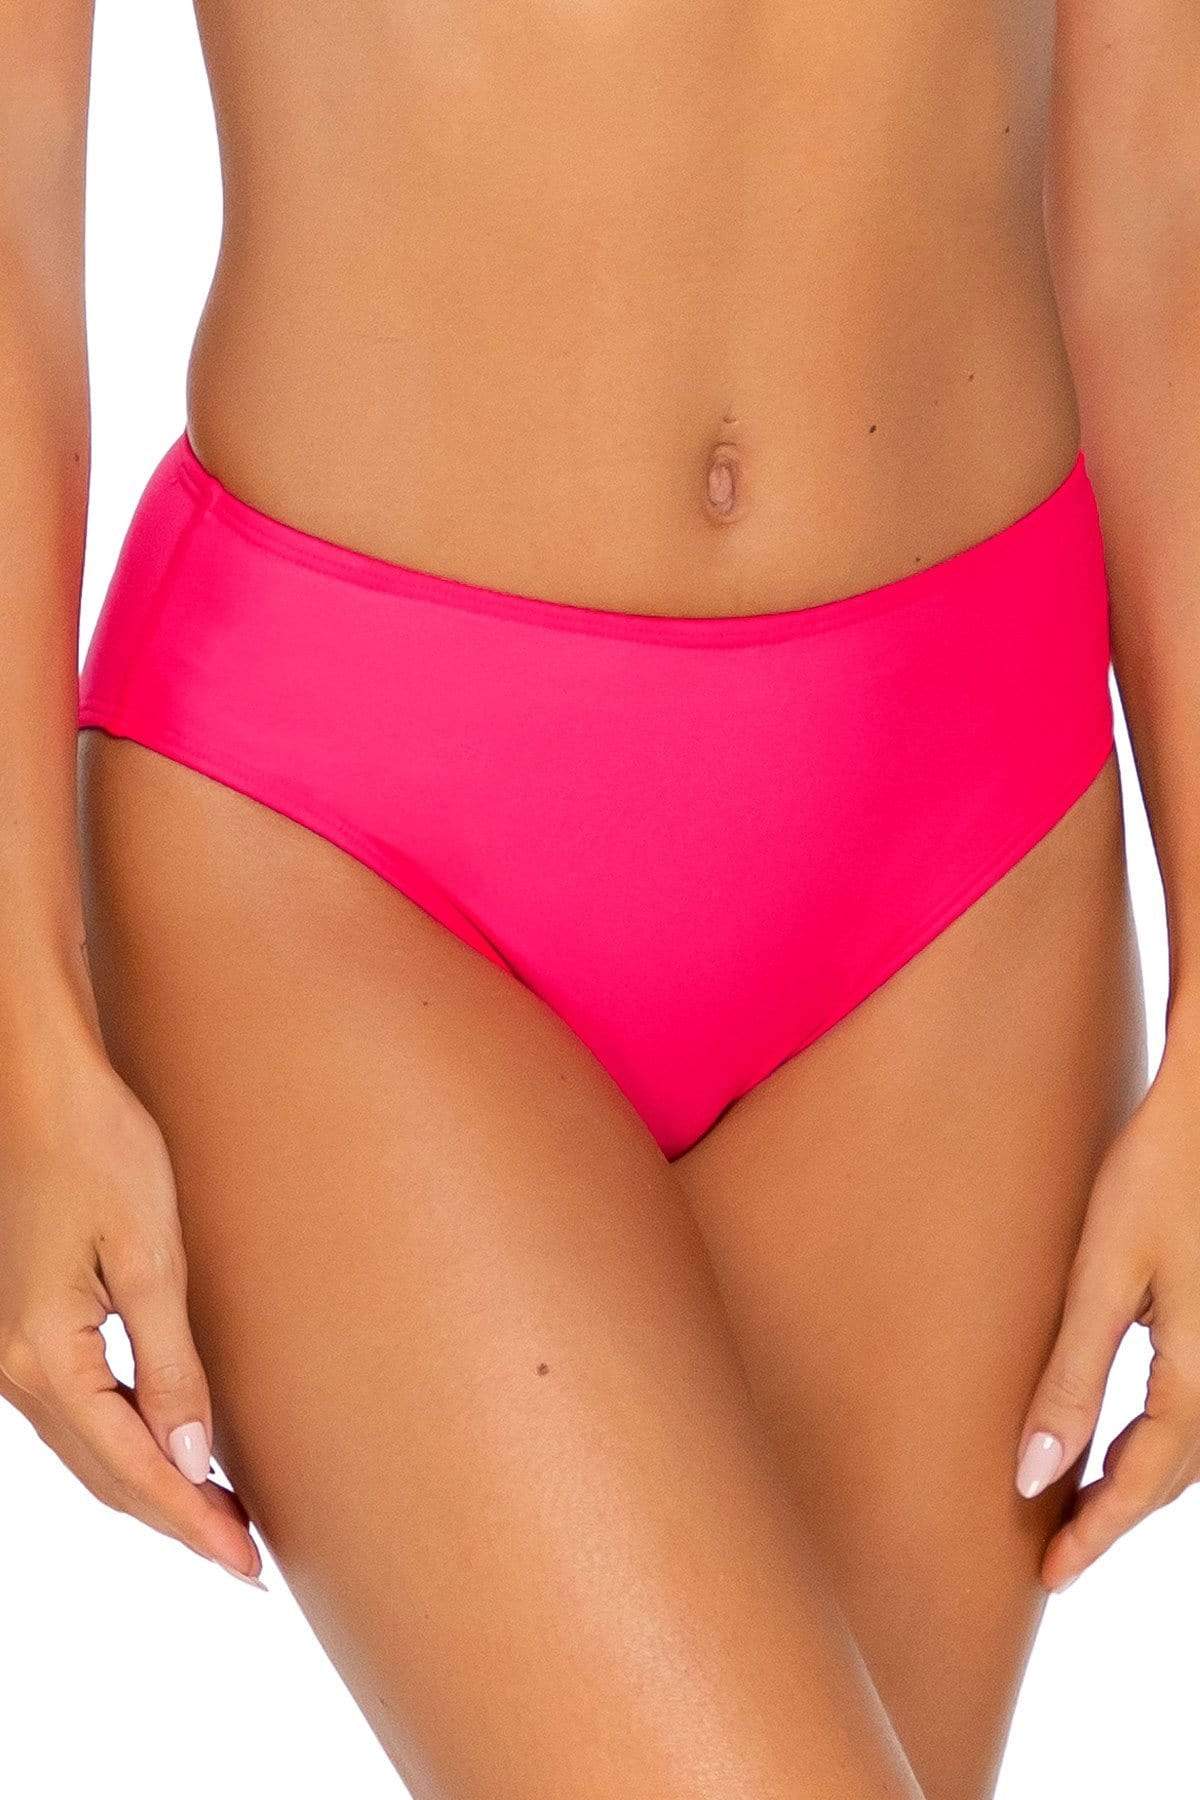 Bestswimwear -  Sunsets Hot Pink Basic Bottom